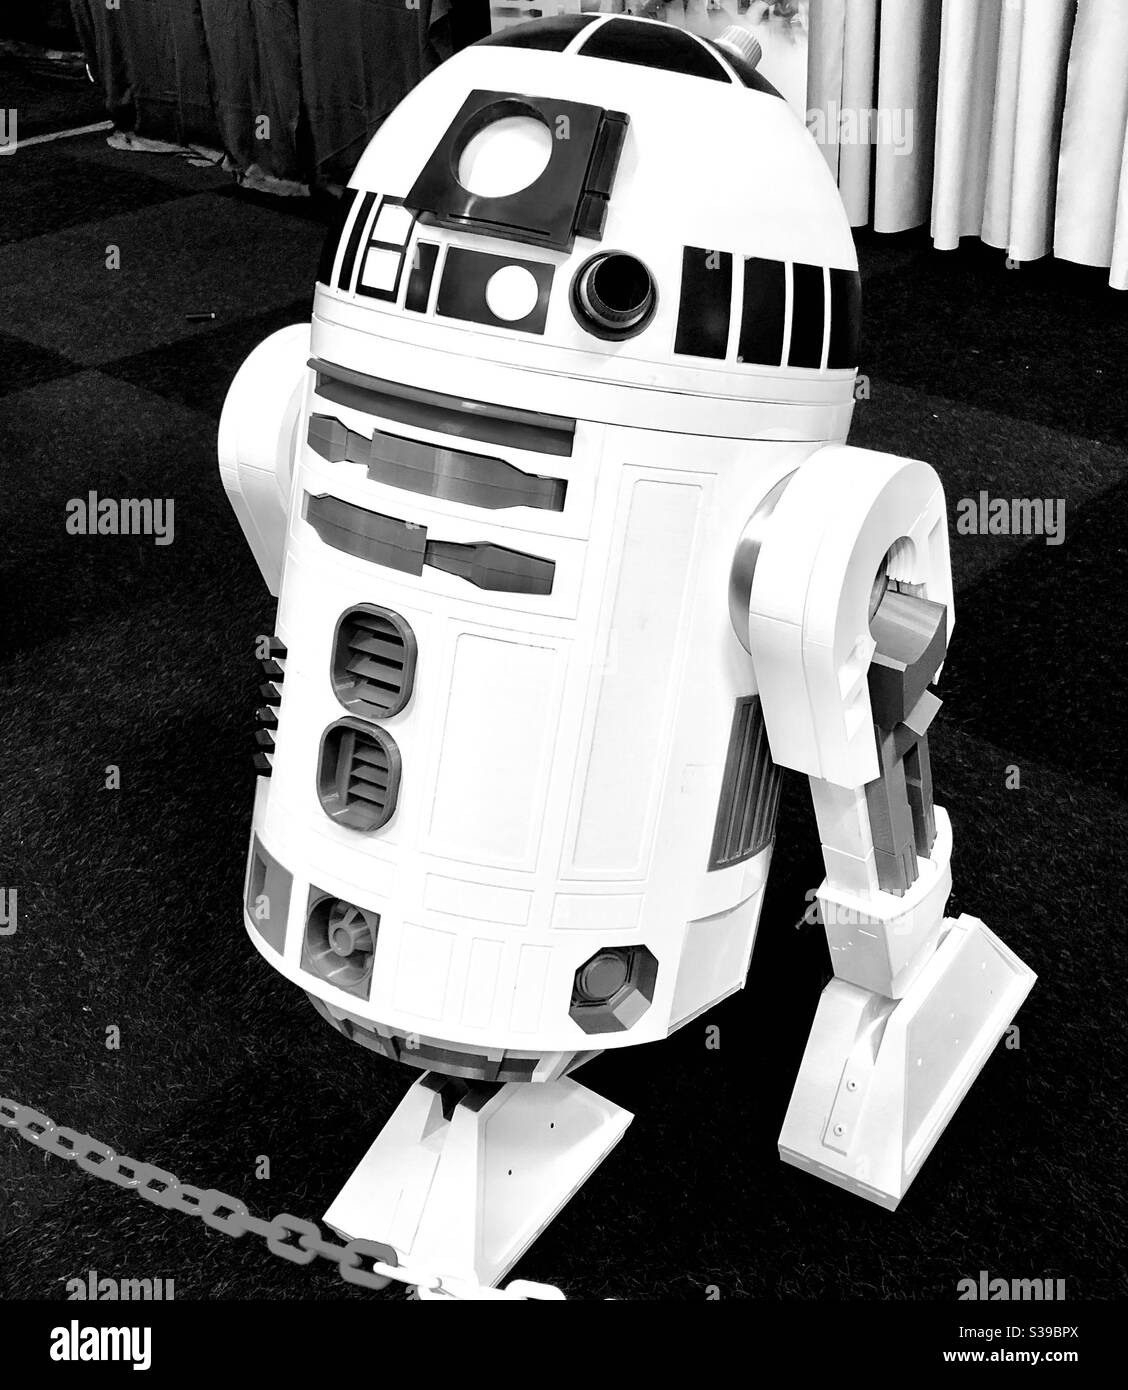 R2 d2 in star wars Imágenes de stock en blanco y negro - Alamy